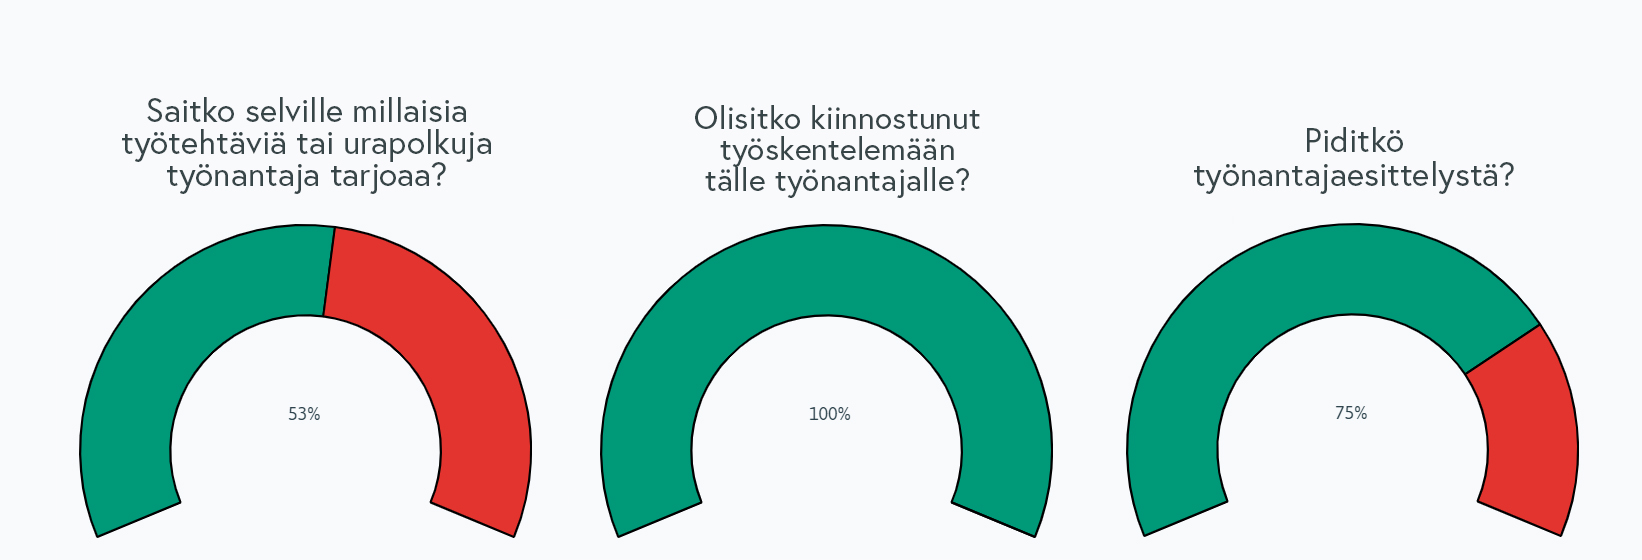 analytiikka_kuntarekry_tyonantajasivu-1.jpg